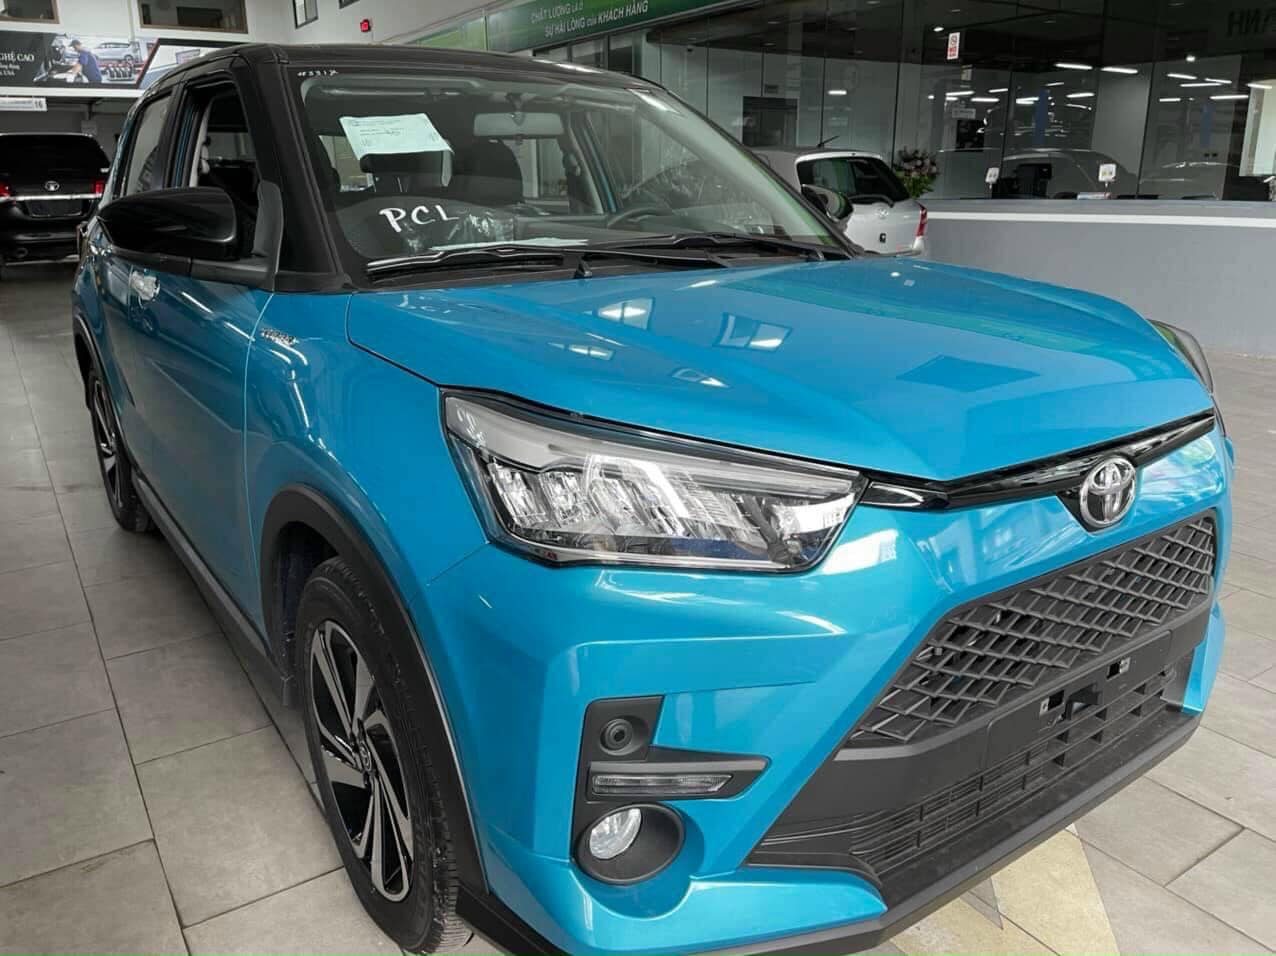 Chi tiết Toyota Raize nhập khẩu từ Indonesia ra mắt tại Việt Nam tháng 11 2021  Toyota Vũng Tàu  Hotline KD 0929 000 999